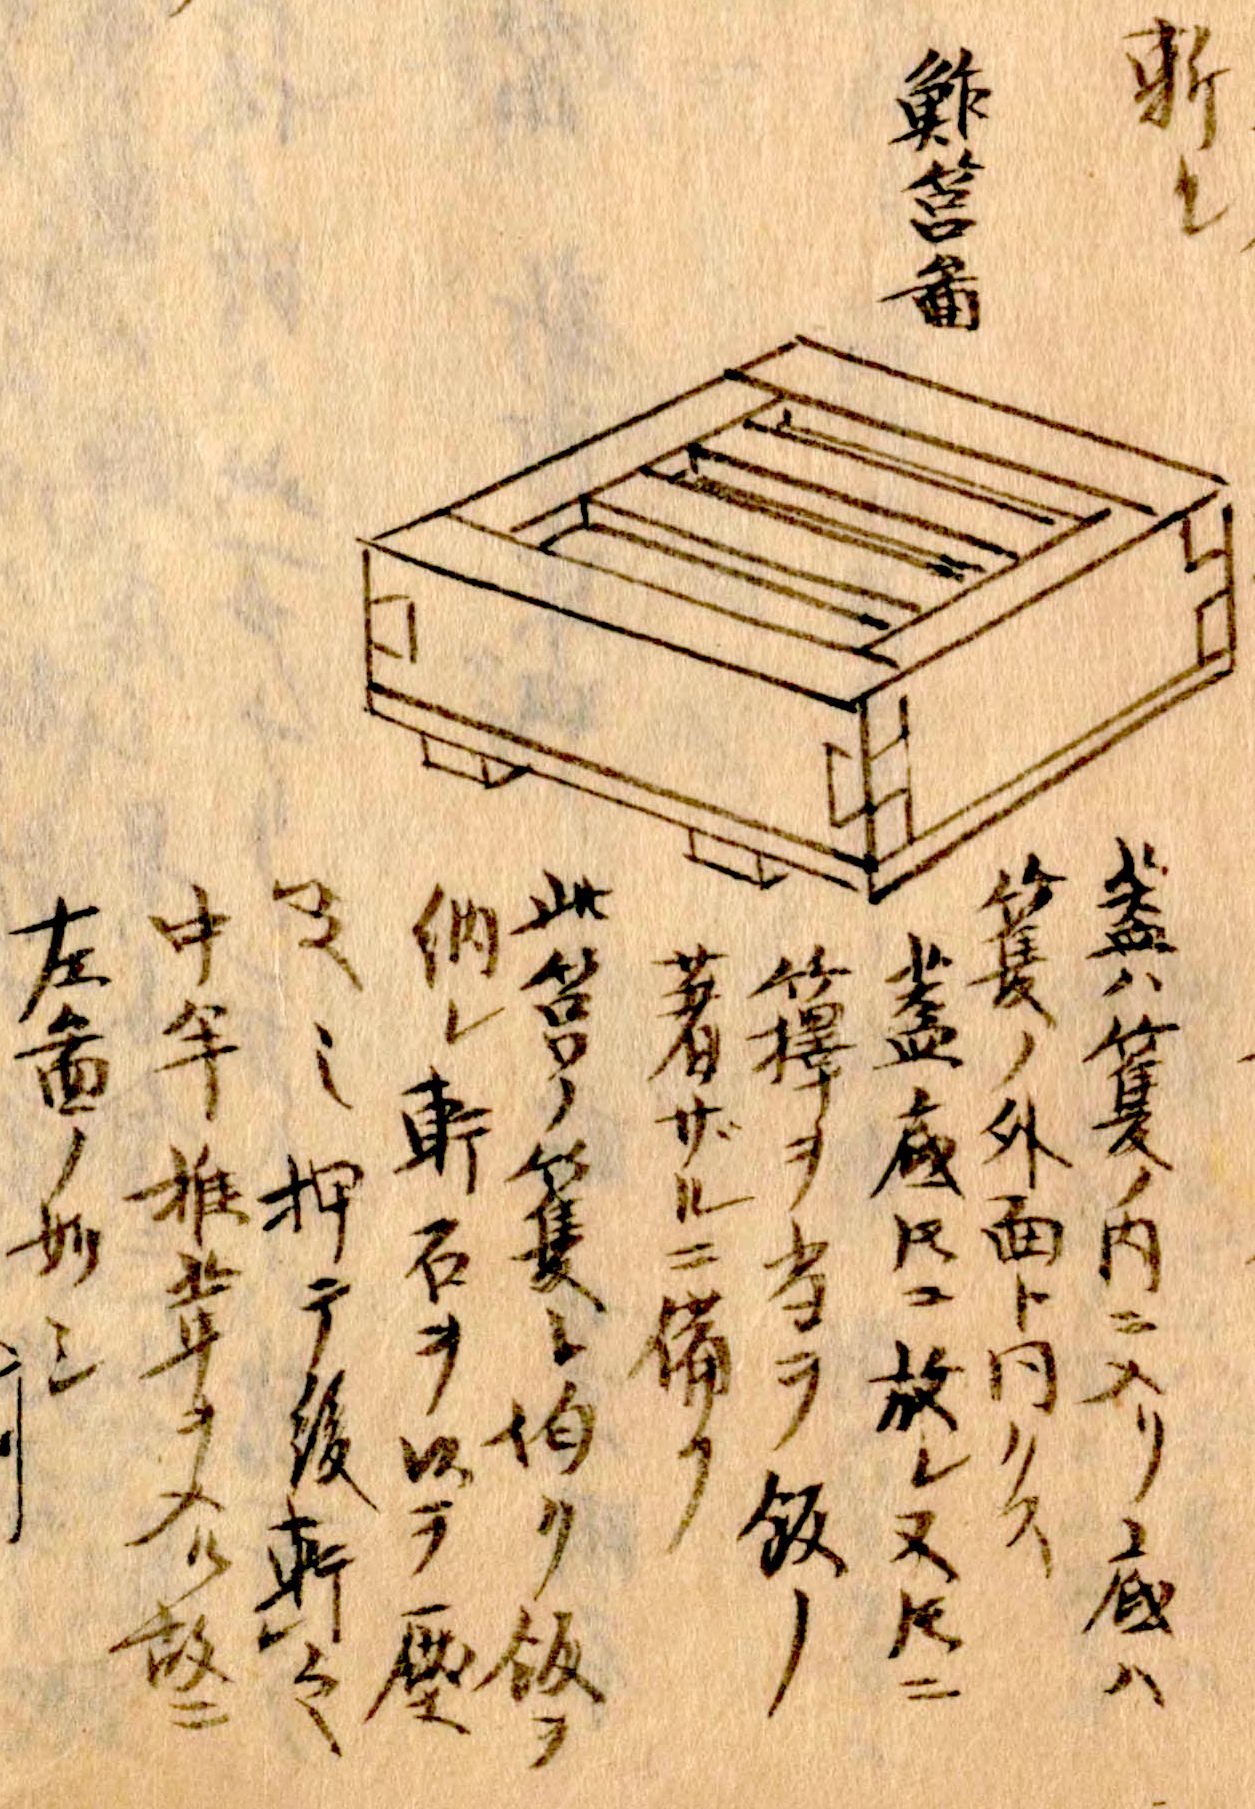 筥鮓圖。在四方形的木制模具中鋪上壽司飯，放上配料，蓋上蓋後用重石或手壓緊成型。（《守貞漫稿》國立國會圖書館藏）。與現在依然在使用的模具外形基本一致。